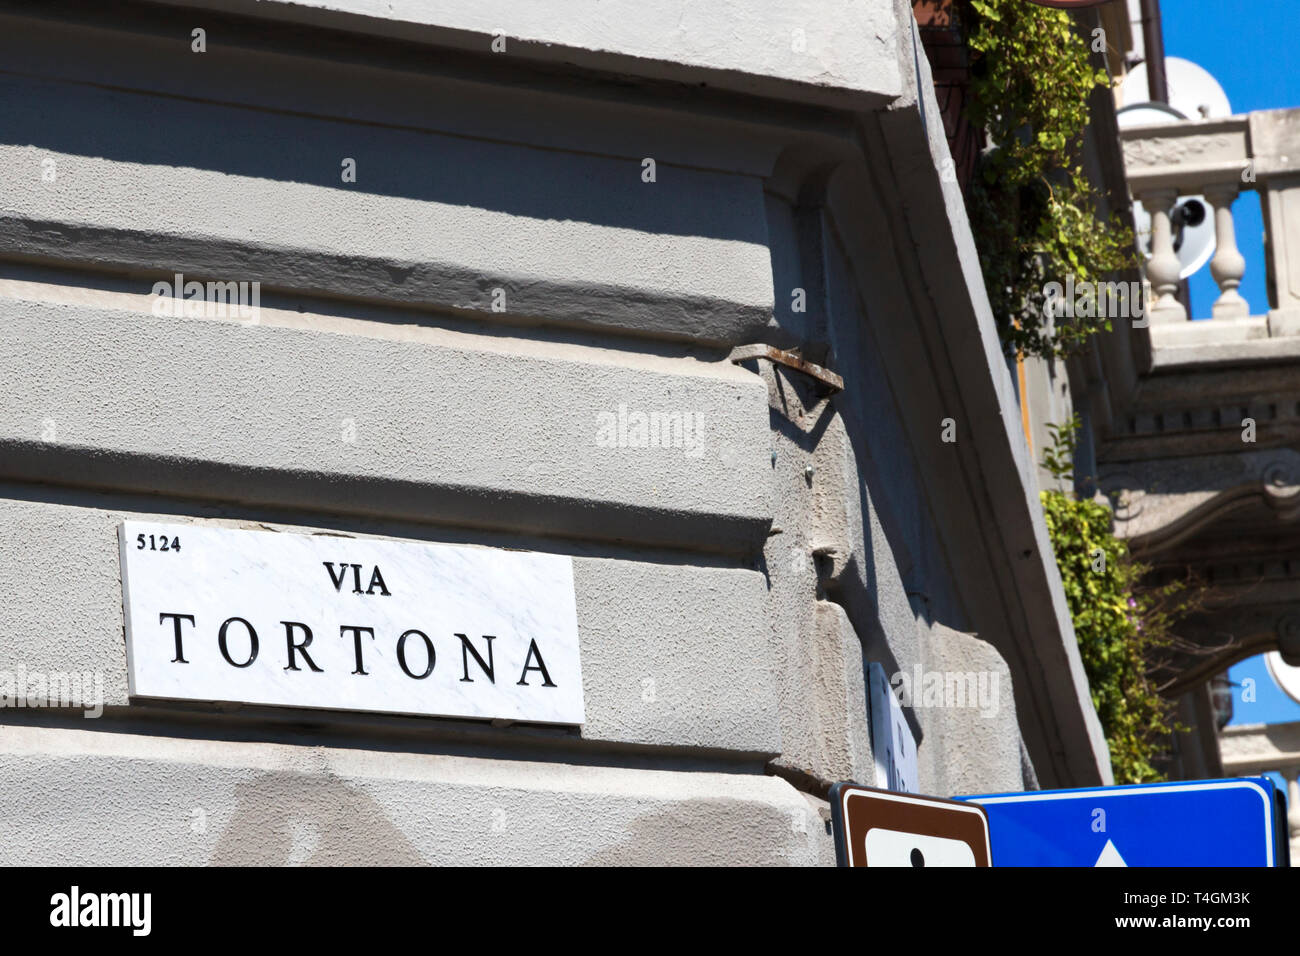 Milan, plaque de rue, Via Tortona - en panneau avec le nom de la route. Quartier Tortona important pour les secteurs de la mode et du design, la Lombardie Italie Banque D'Images